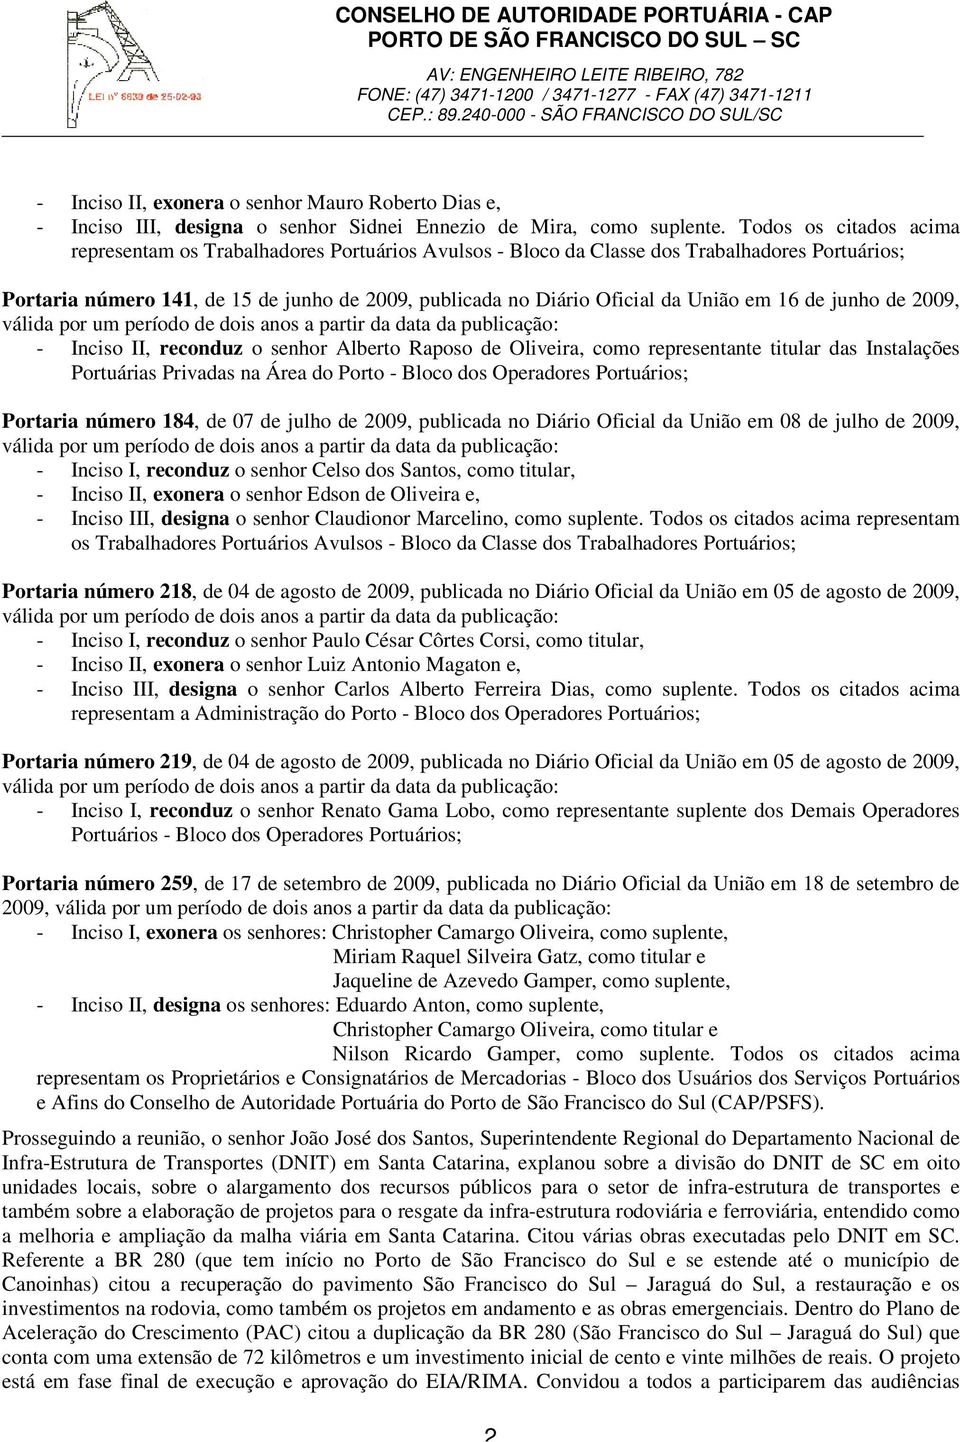 União em 16 de junho de 2009, - Inciso II, reconduz o senhor Alberto Raposo de Oliveira, como representante titular das Instalações Portuárias Privadas na Área do Porto - Bloco dos Operadores